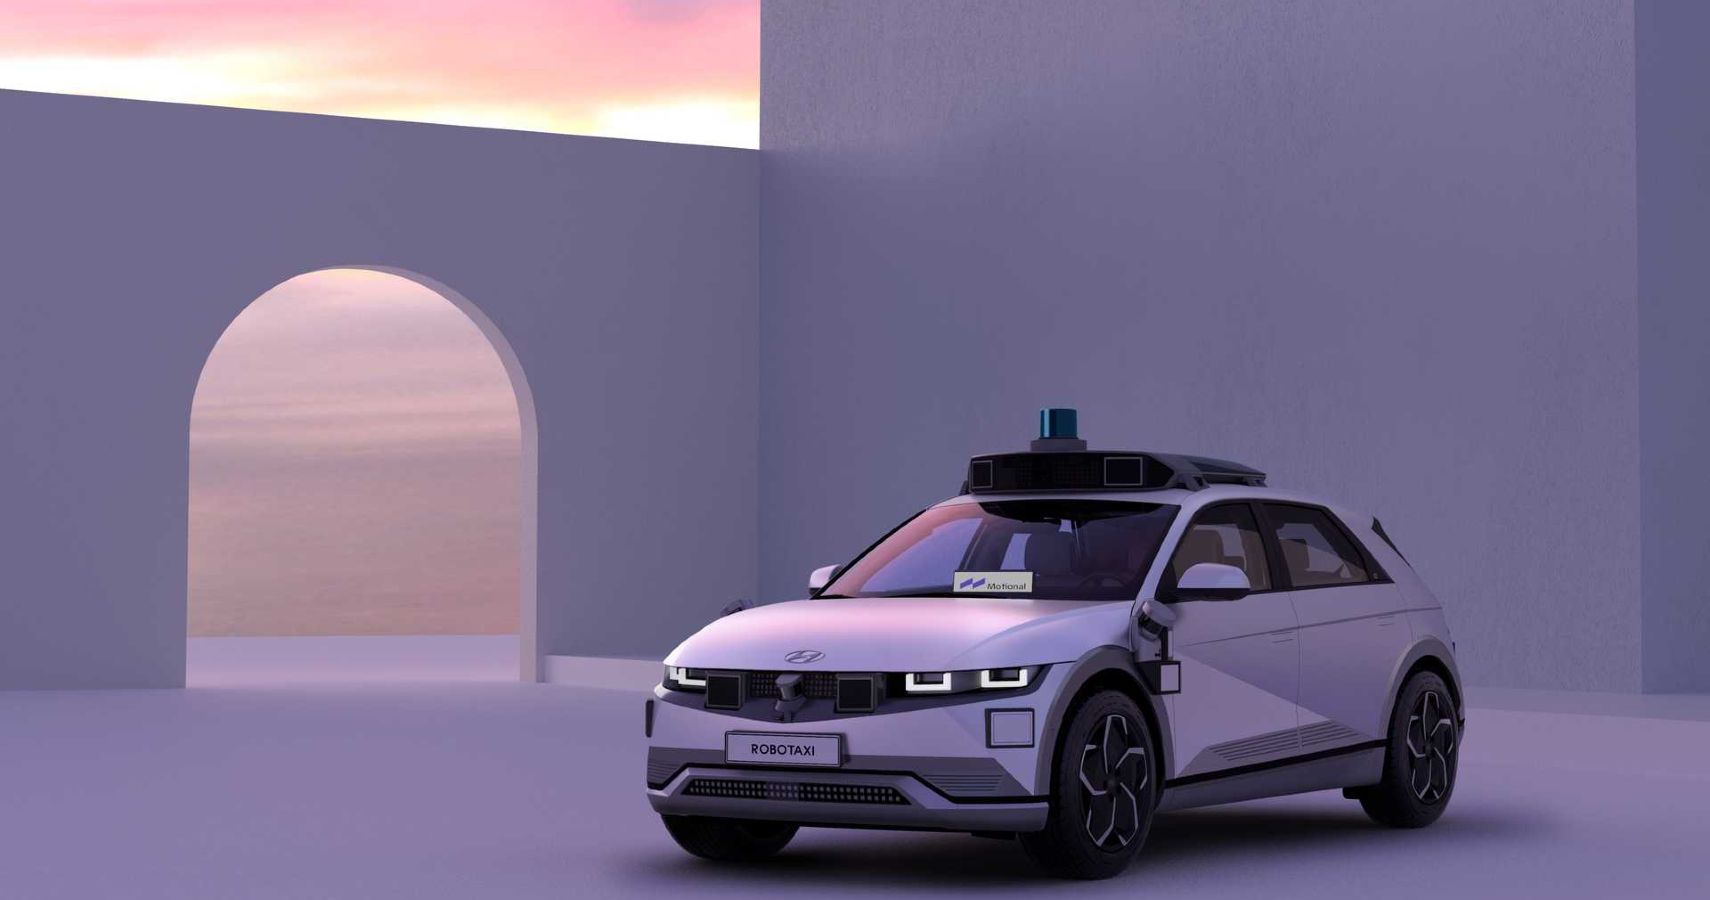 The Driverless Hyundai Ioniq 5 Robotaxi